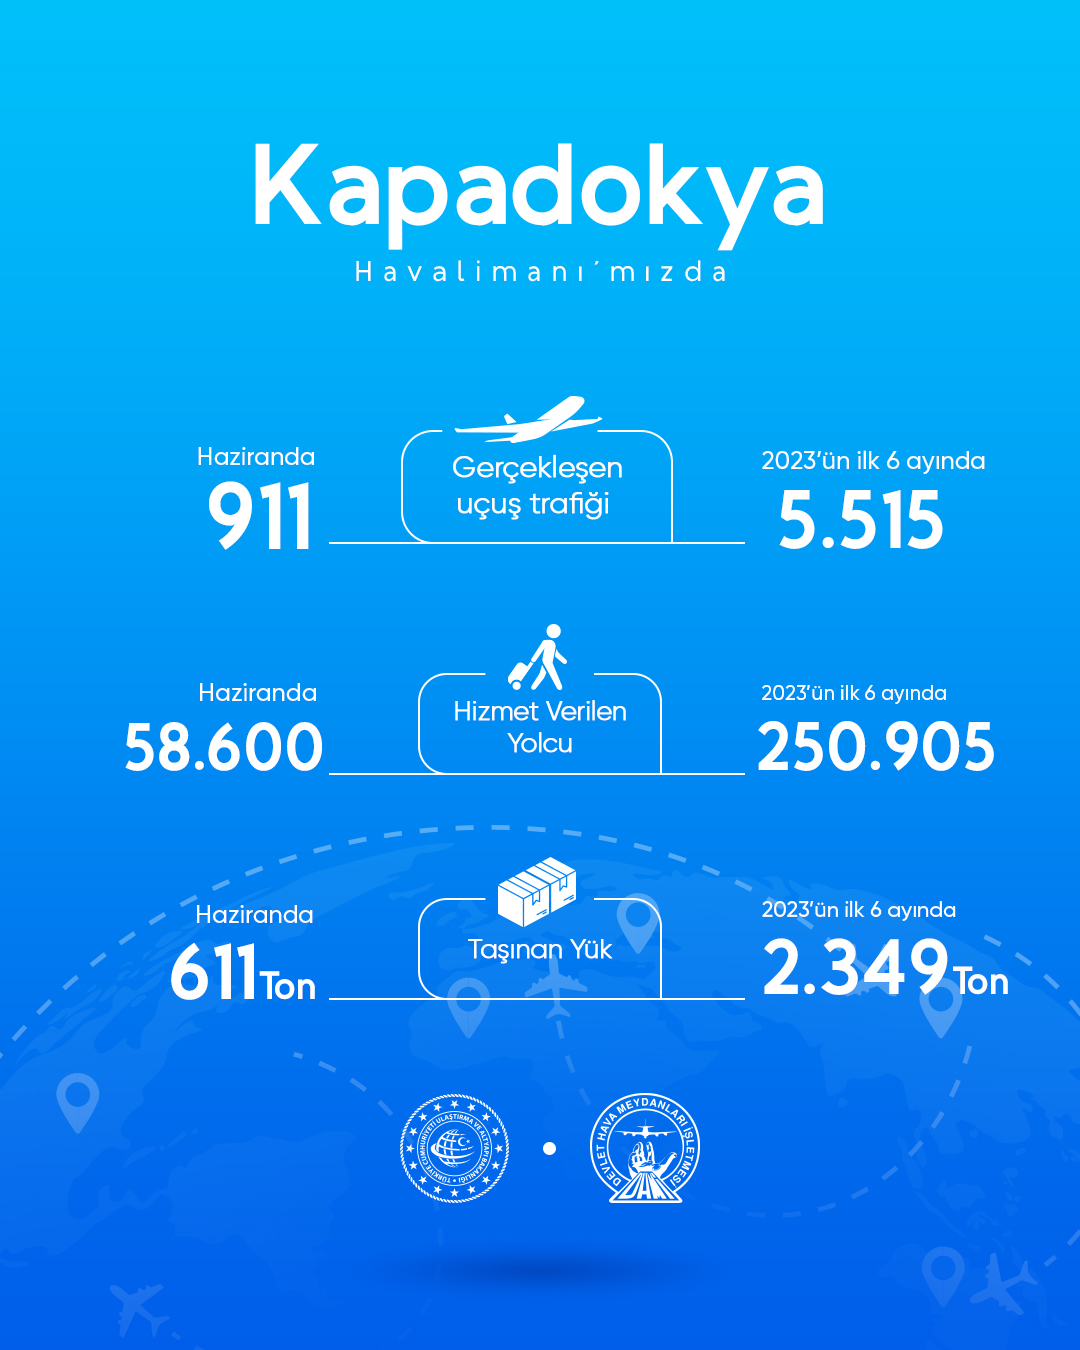 Kapadokya Havalimanı’nda haziran ayında 58.600 yolcuya hizmet verildi 16 Mayıs 2024